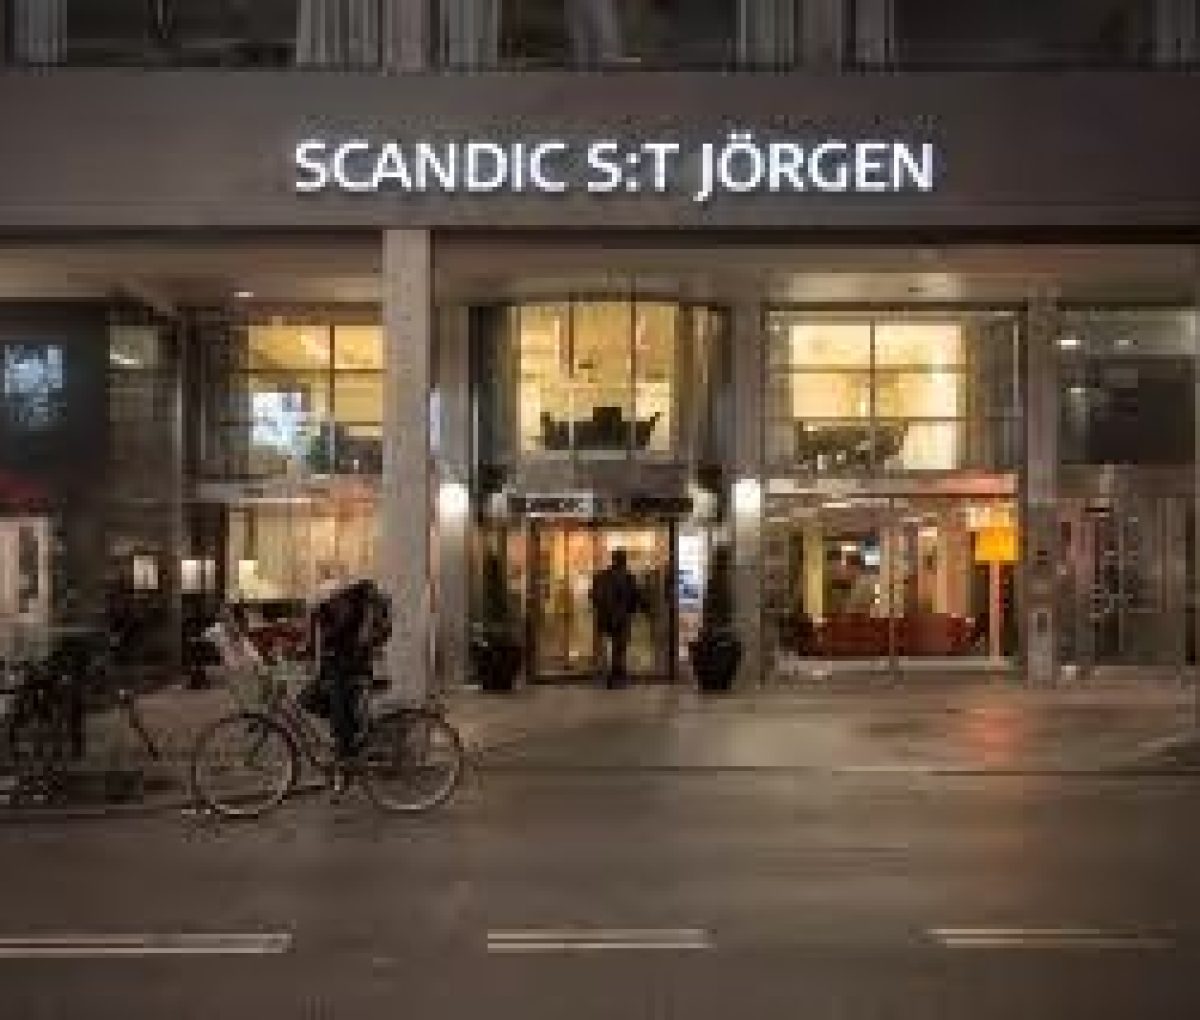 Scandic St. Jorgen Hotel, Malmö, Sweden.